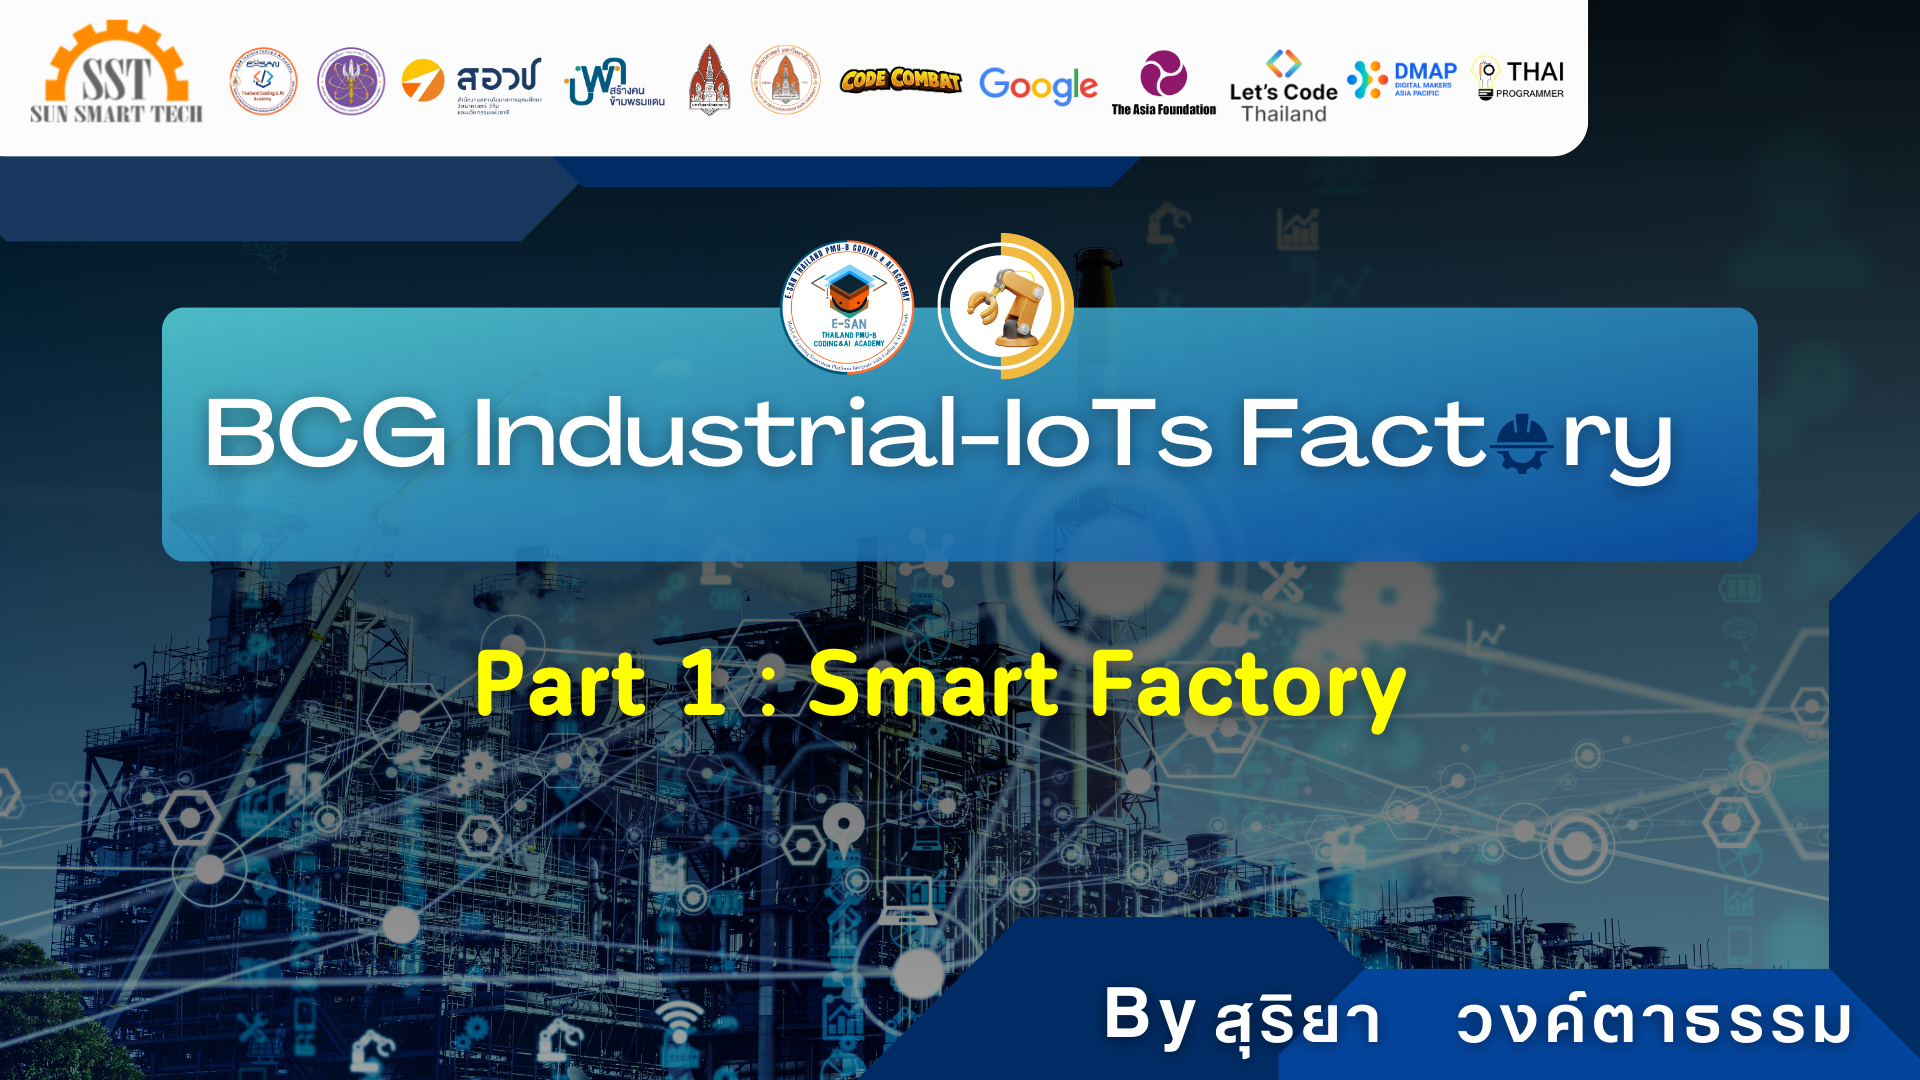 Part 1 : Smart Factory